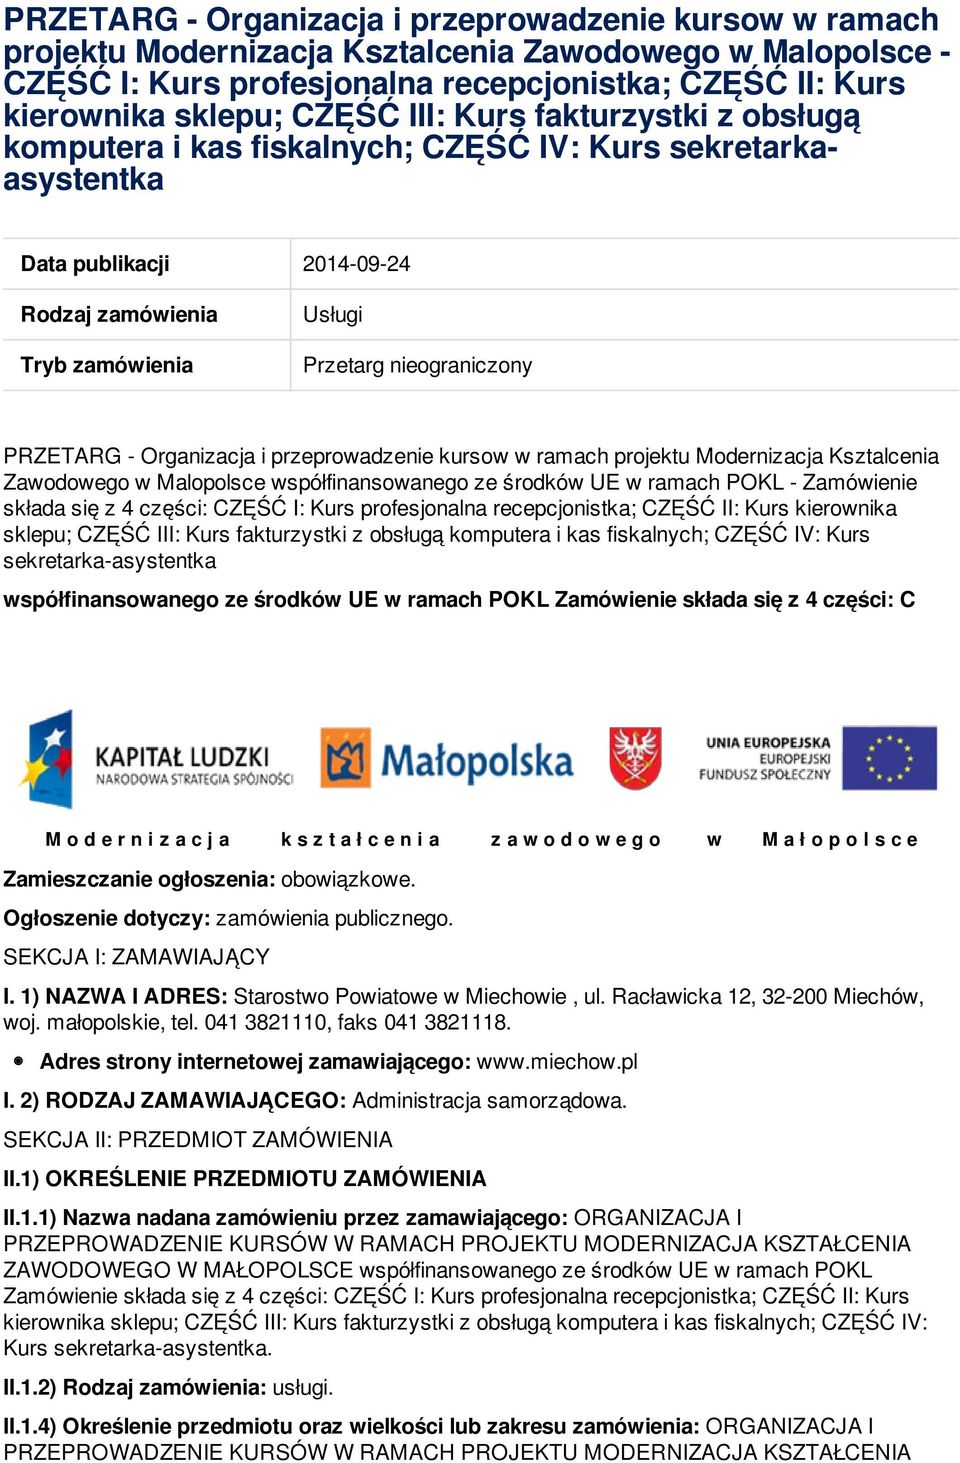 PRZETARG - Organizacja i przeprowadzenie kursow w ramach projektu Modernizacja Ksztalcenia Zawodowego w Malopolsce współfinansowanego ze środków UE w ramach POKL - Zamówienie składa się z 4 części: